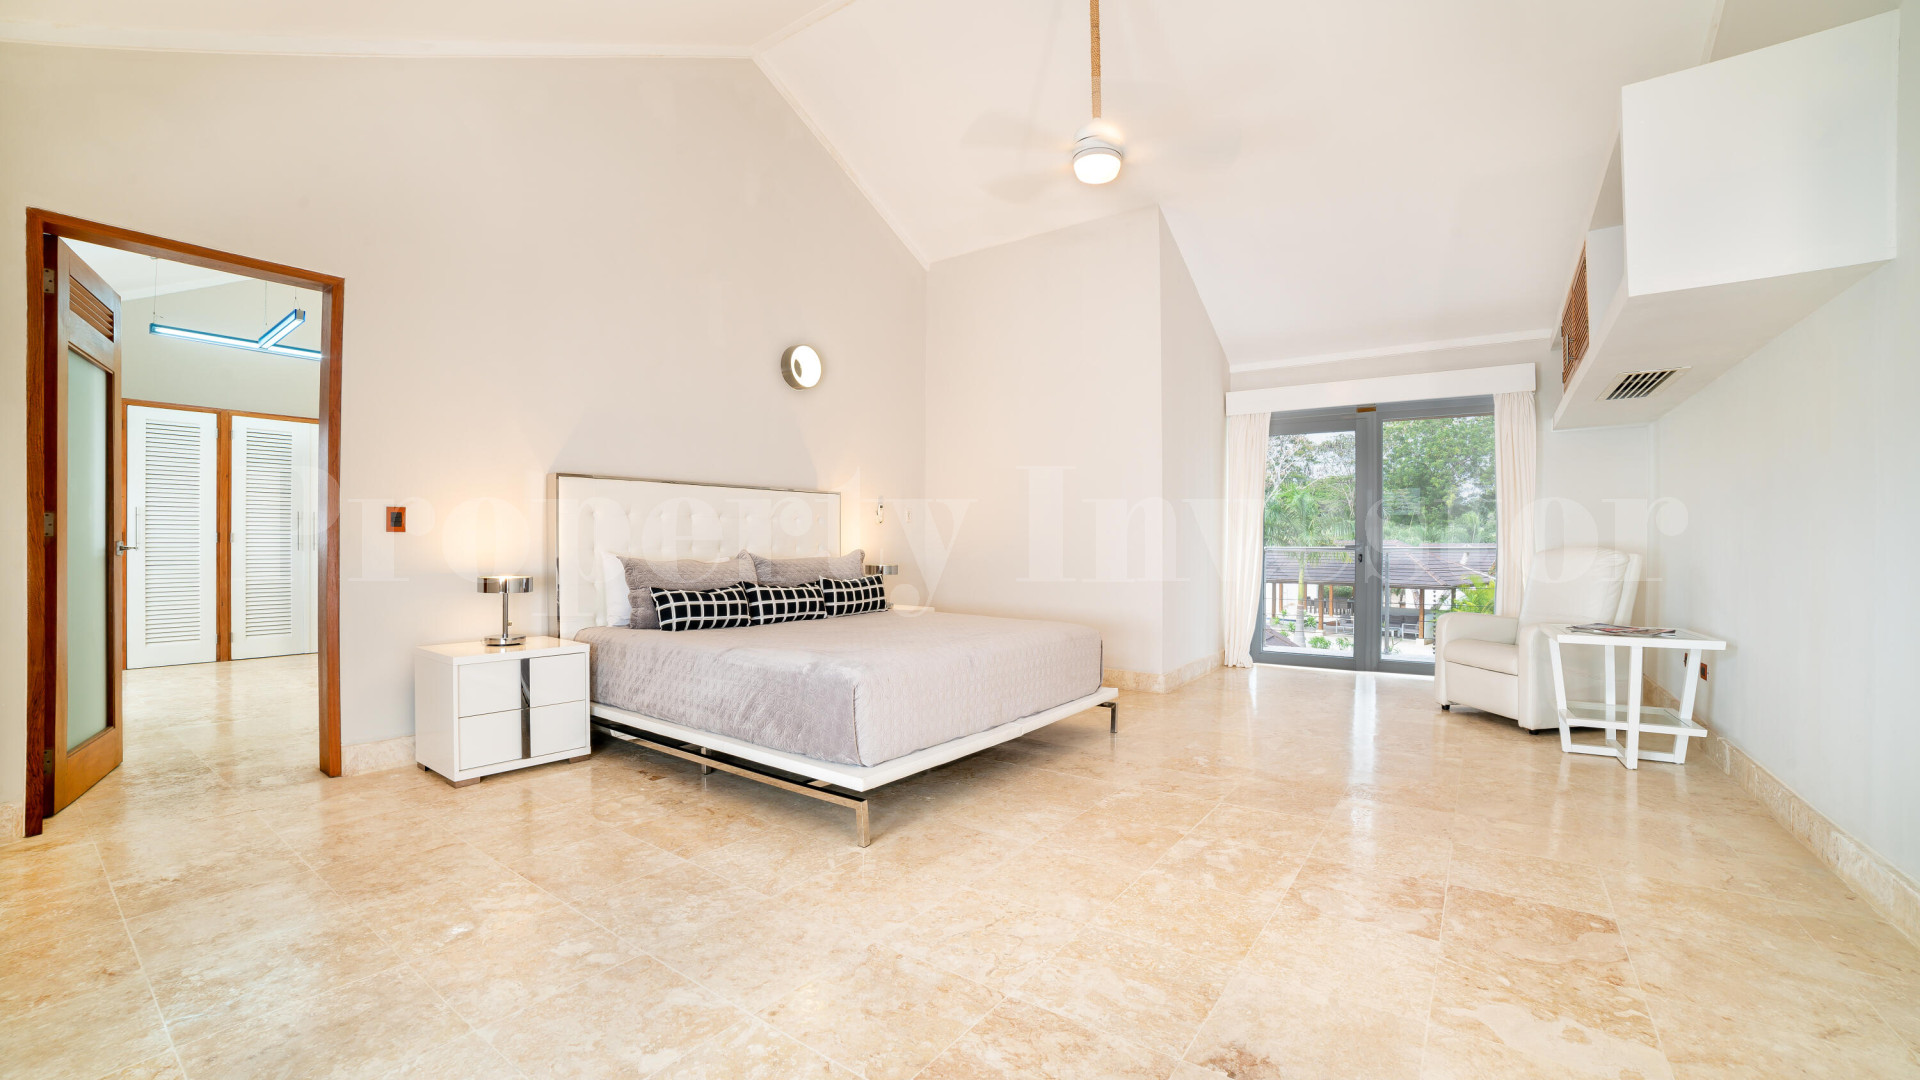 Magnificent 8 Bedroom Open Concept Luxury Golf Estate for Sale in Casa de Campo, the Dominican Republic